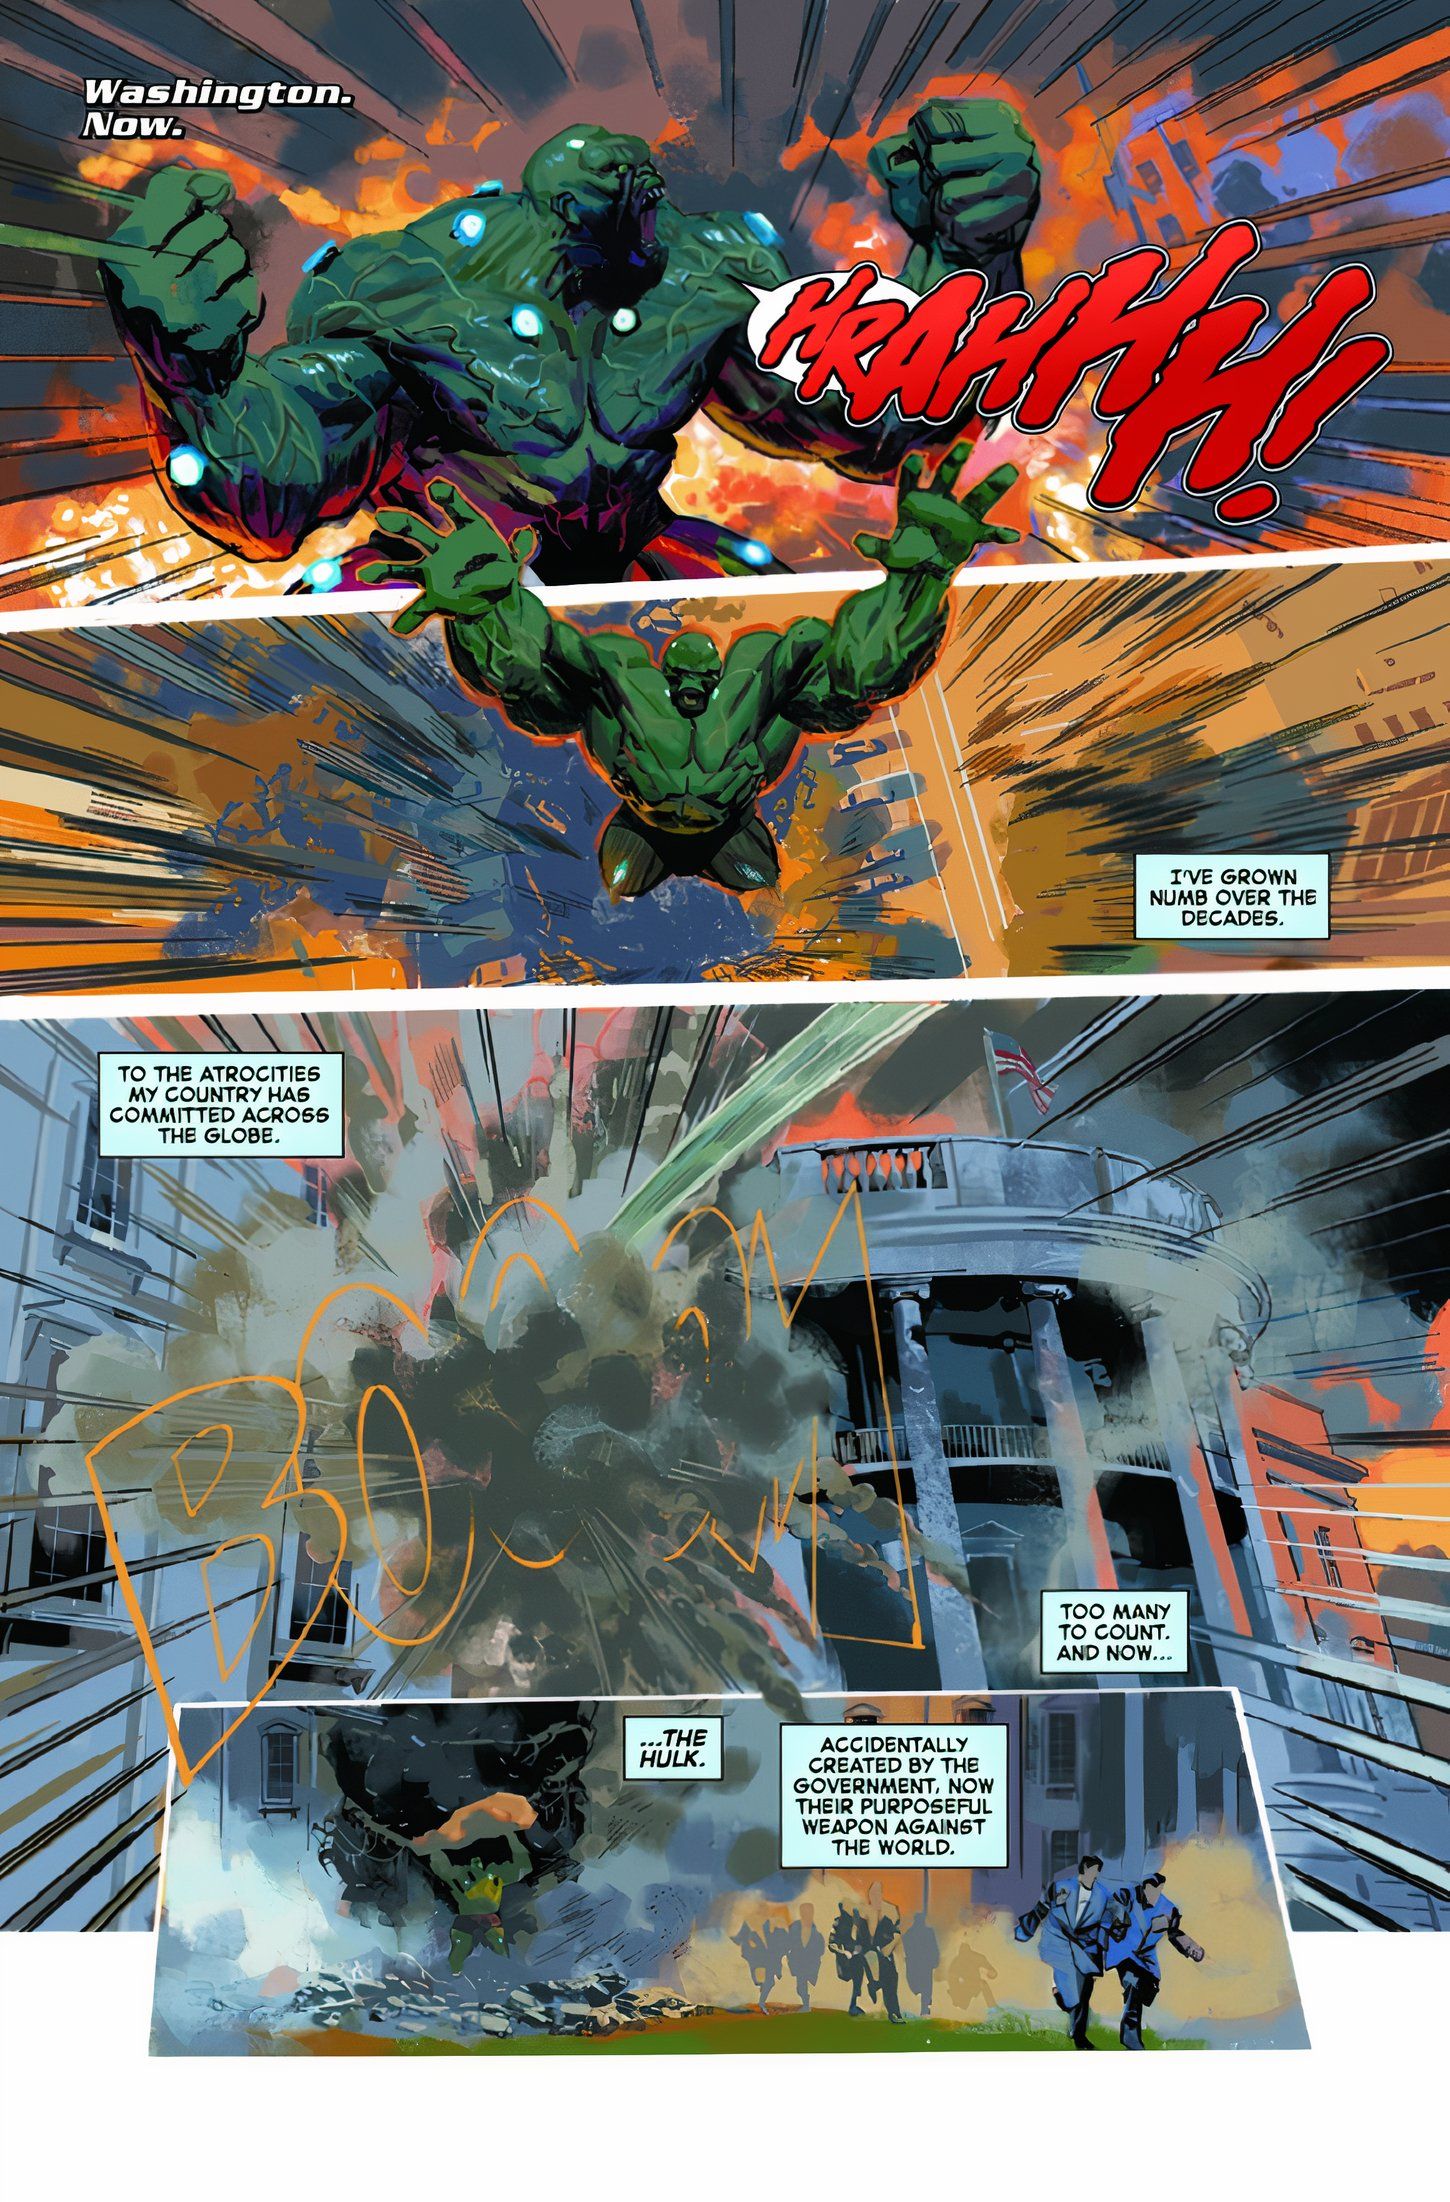 Hulk ruge e começa a destruir um prédio. 